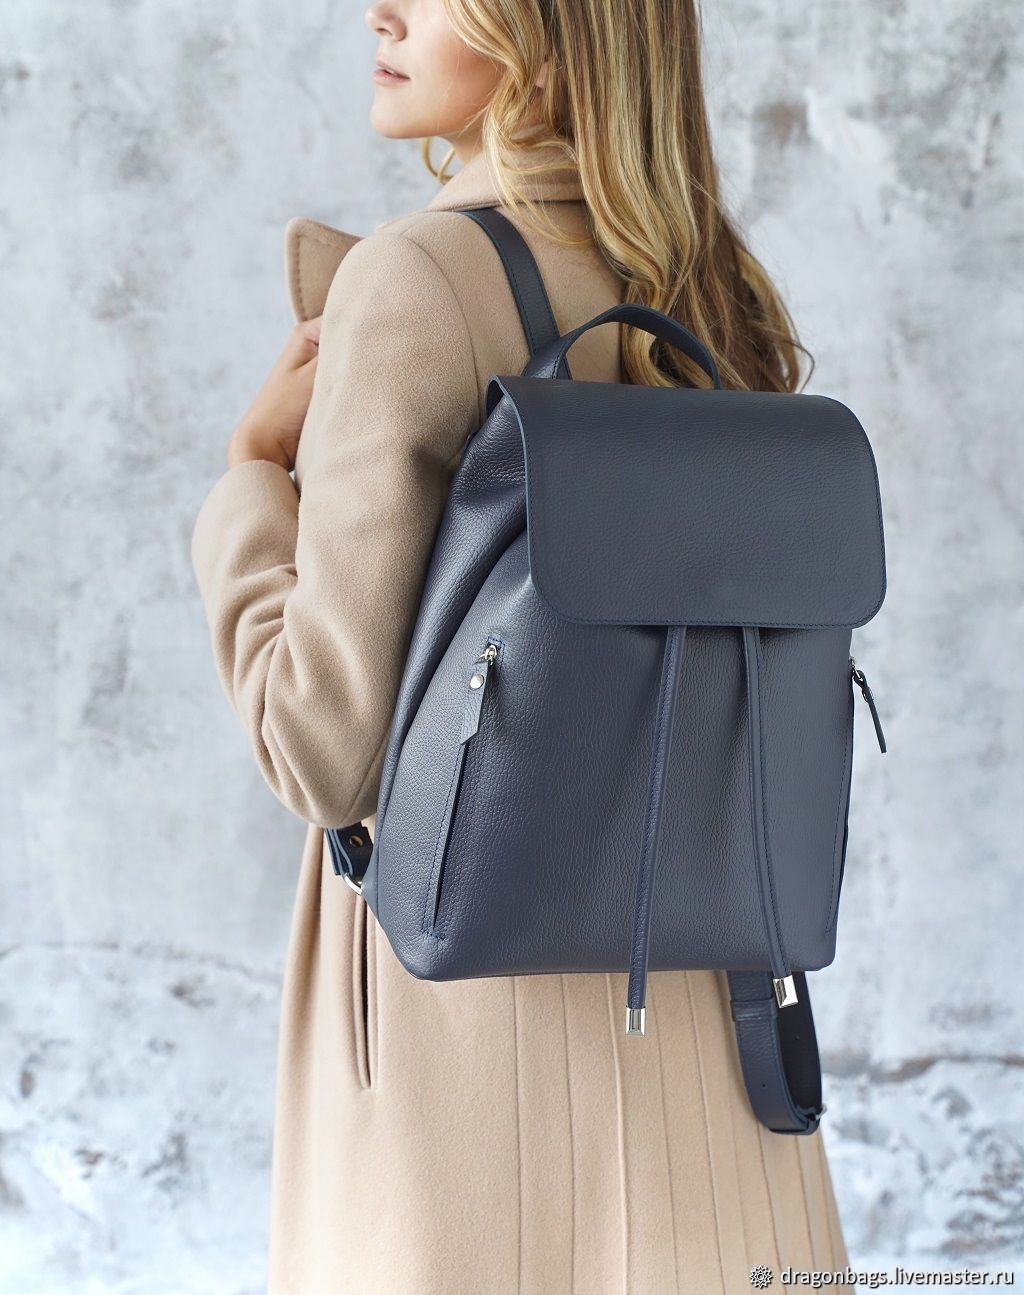 Backpack leather female 'Alter Ego' (Dark blue), Backpacks, Yaroslavl,  Фото №1